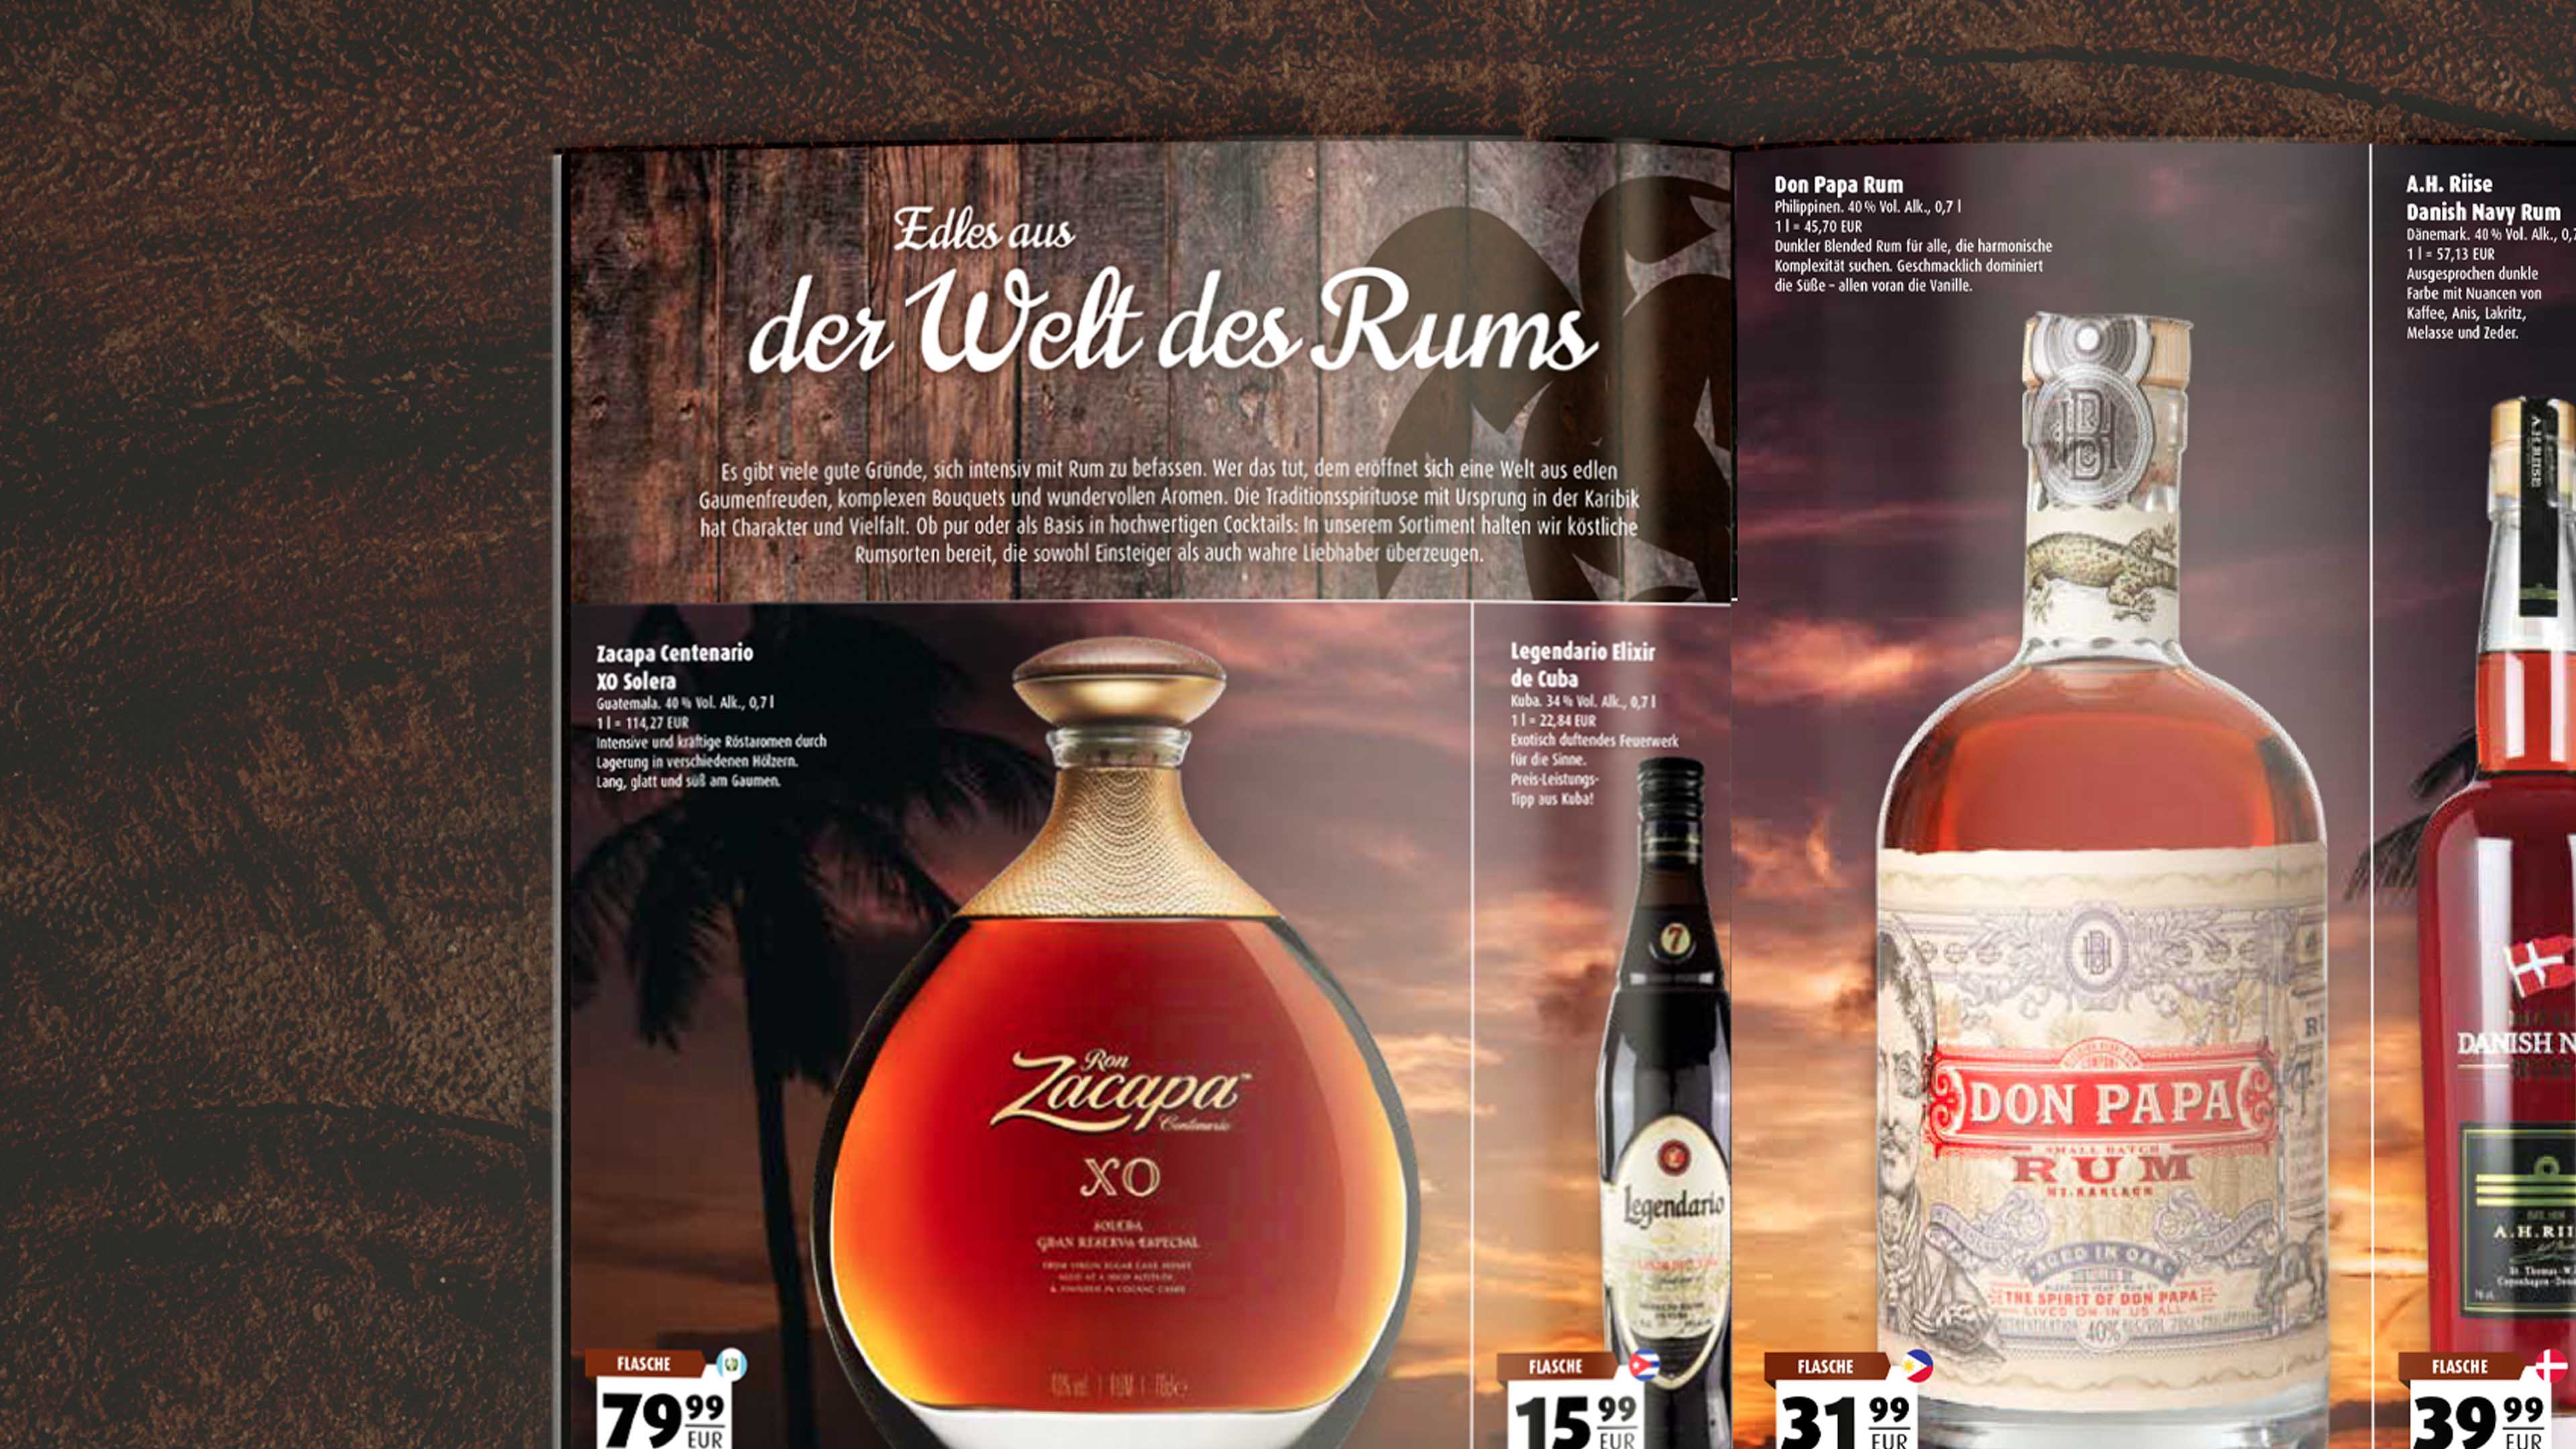 Rum Werbung auf Scandiprospekt